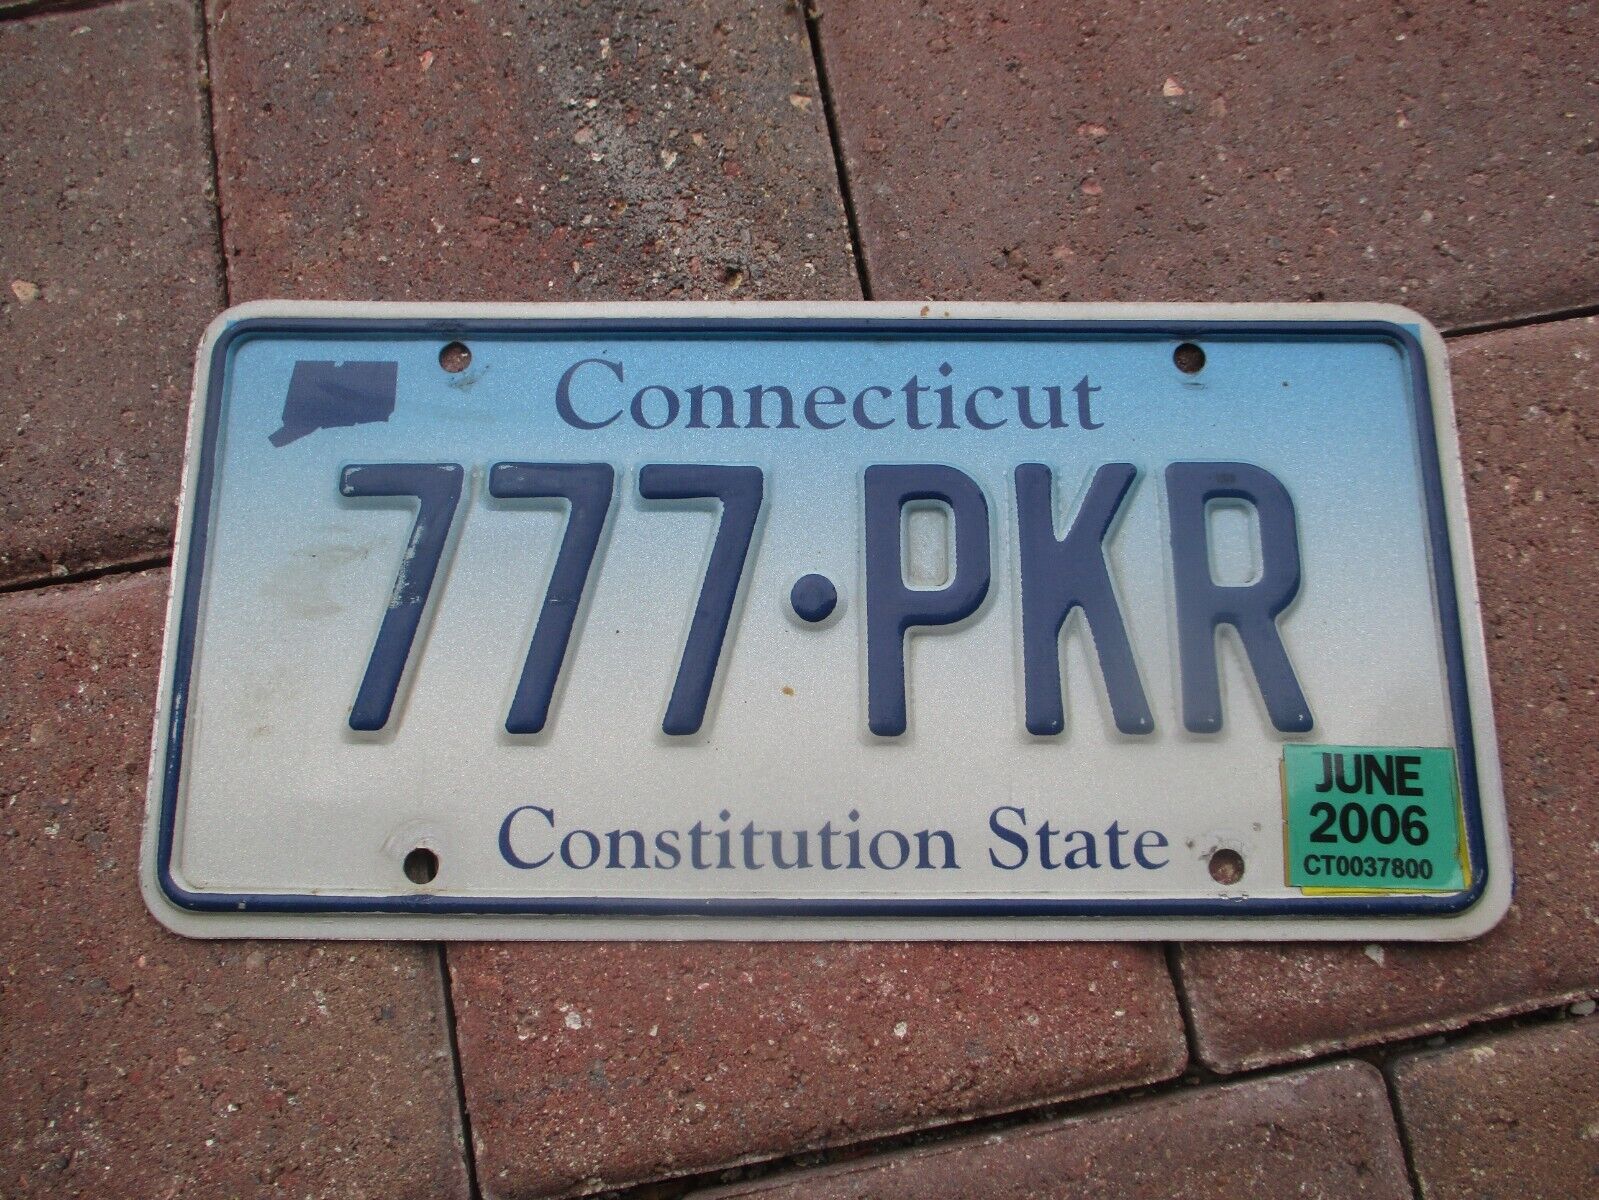 Connecticut 2006  license plate   #  777 - PKR